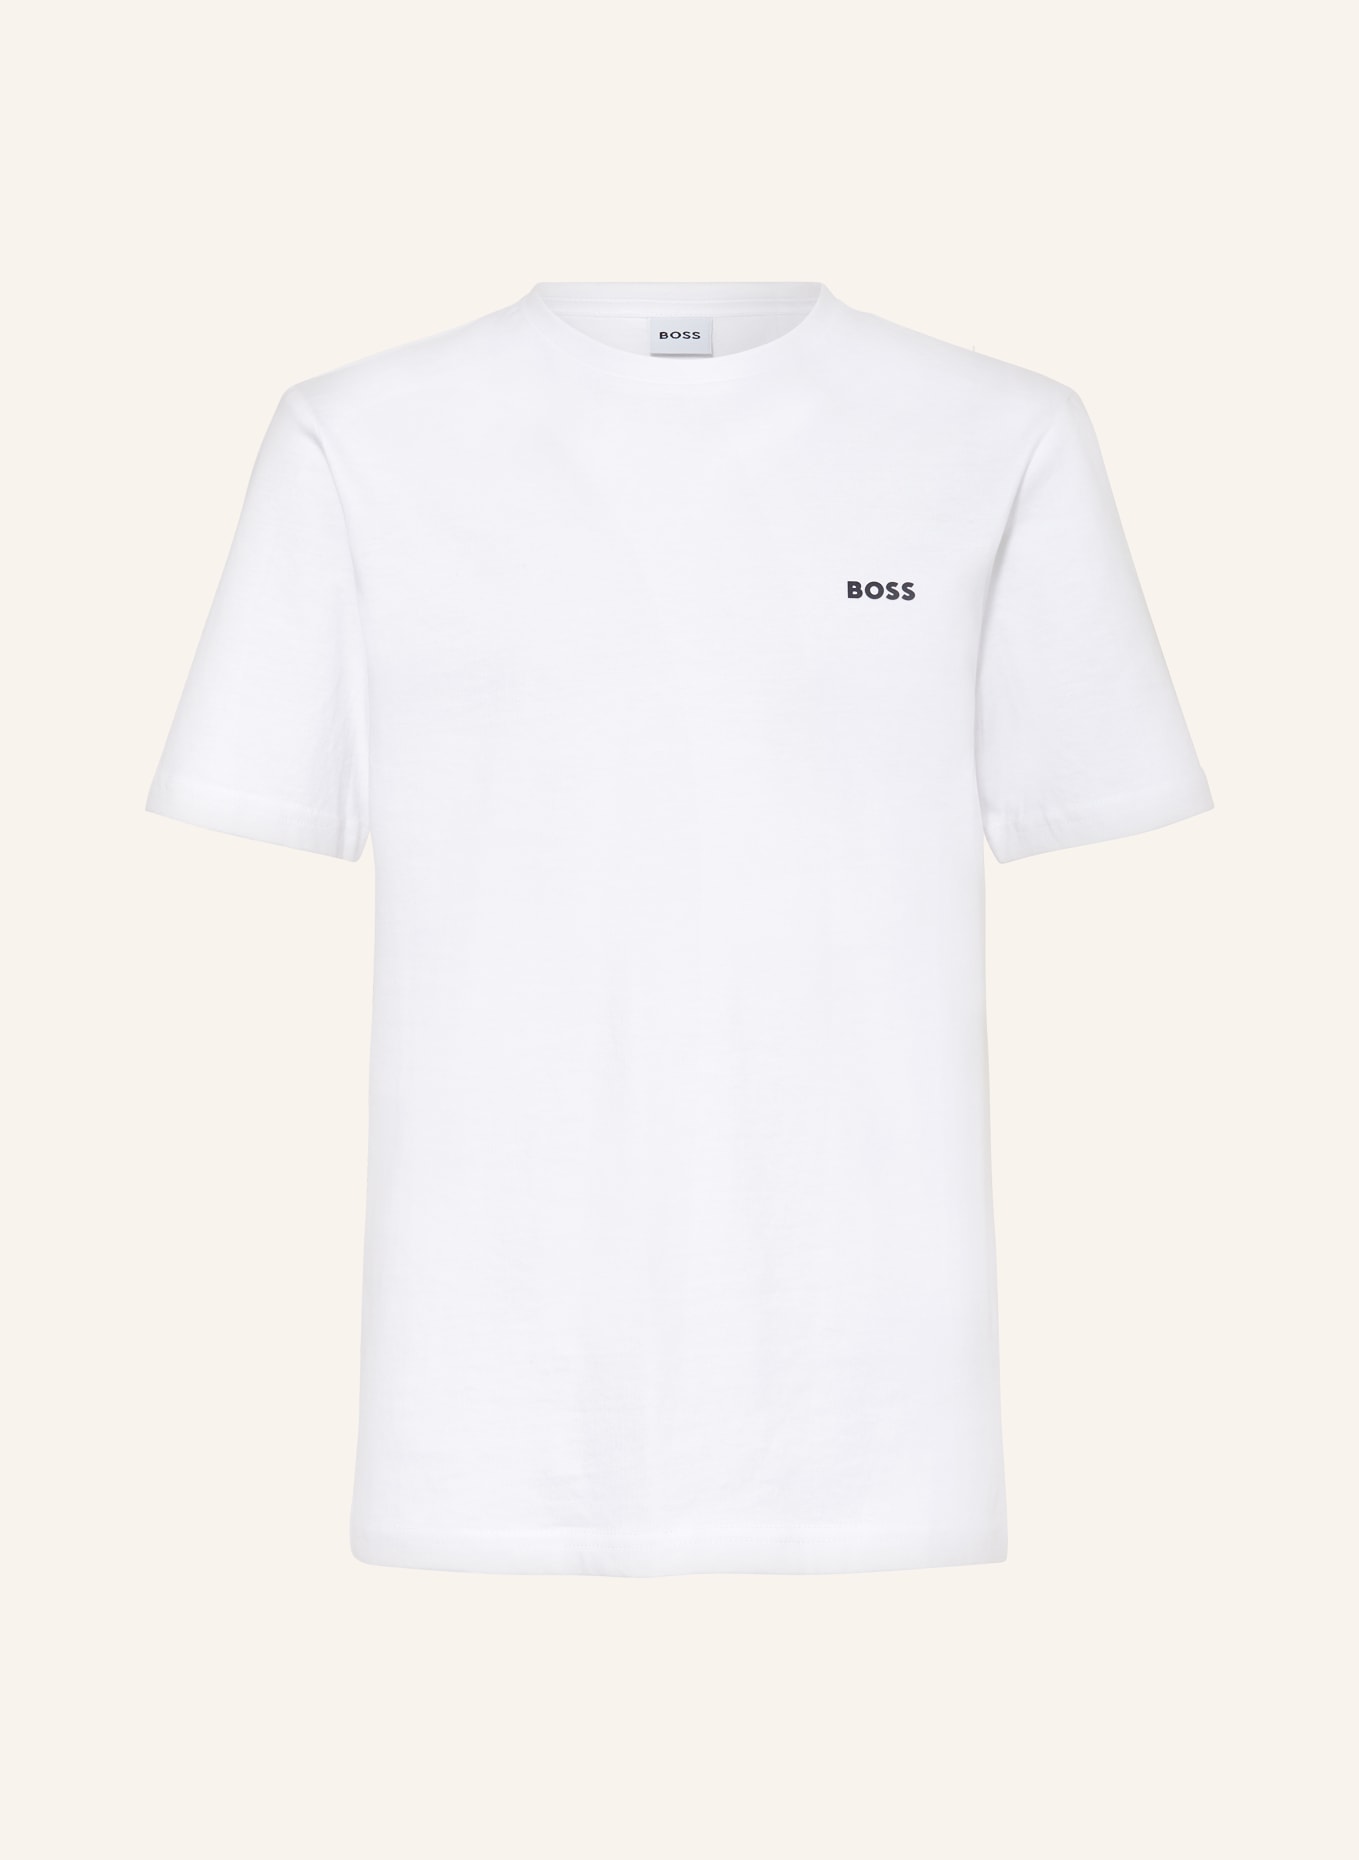 BOSS T-Shirt LOGO MIINI, Farbe: WEISS (Bild 1)